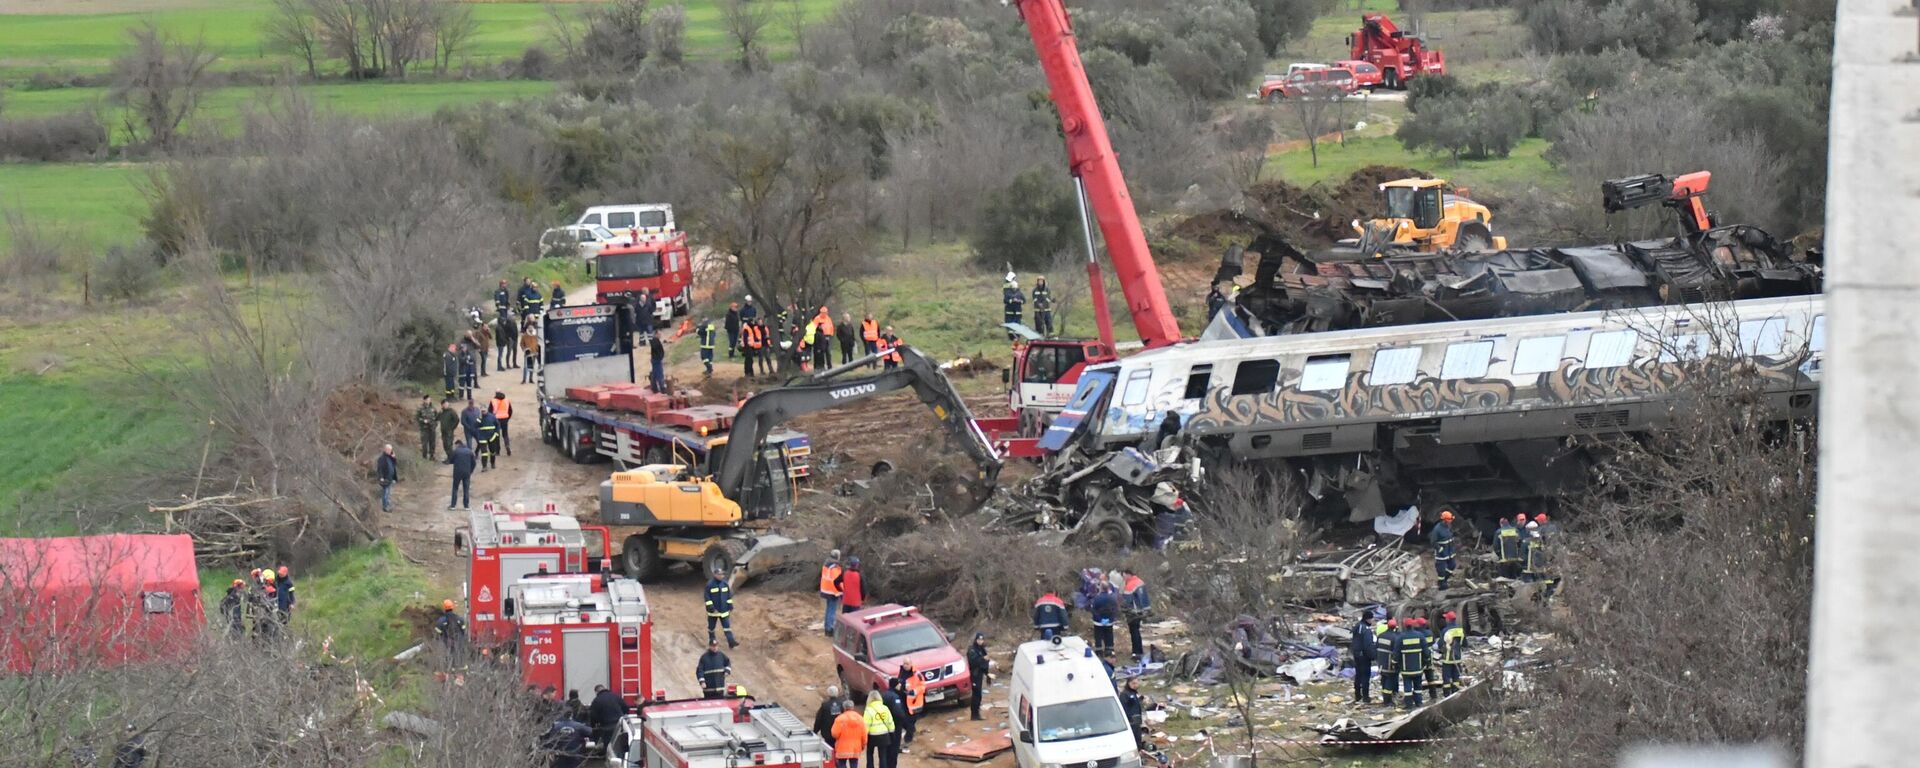 Yunanistan'da meydana gelen tren kazasında 32 kişinin yaşamını yitirdiği, 85 kişinin yaralandığı bildirildi. Yunan Devlet Televizyonu ERT’in haberine göre, Larisa kentinin kuzeyindeki Tempi bölgesinde yolcu treni ile yük treni çarpıştı. Kaza alanında arama kurtarma çalışmaları devam ediyor. - Sputnik Türkiye, 1920, 18.03.2023